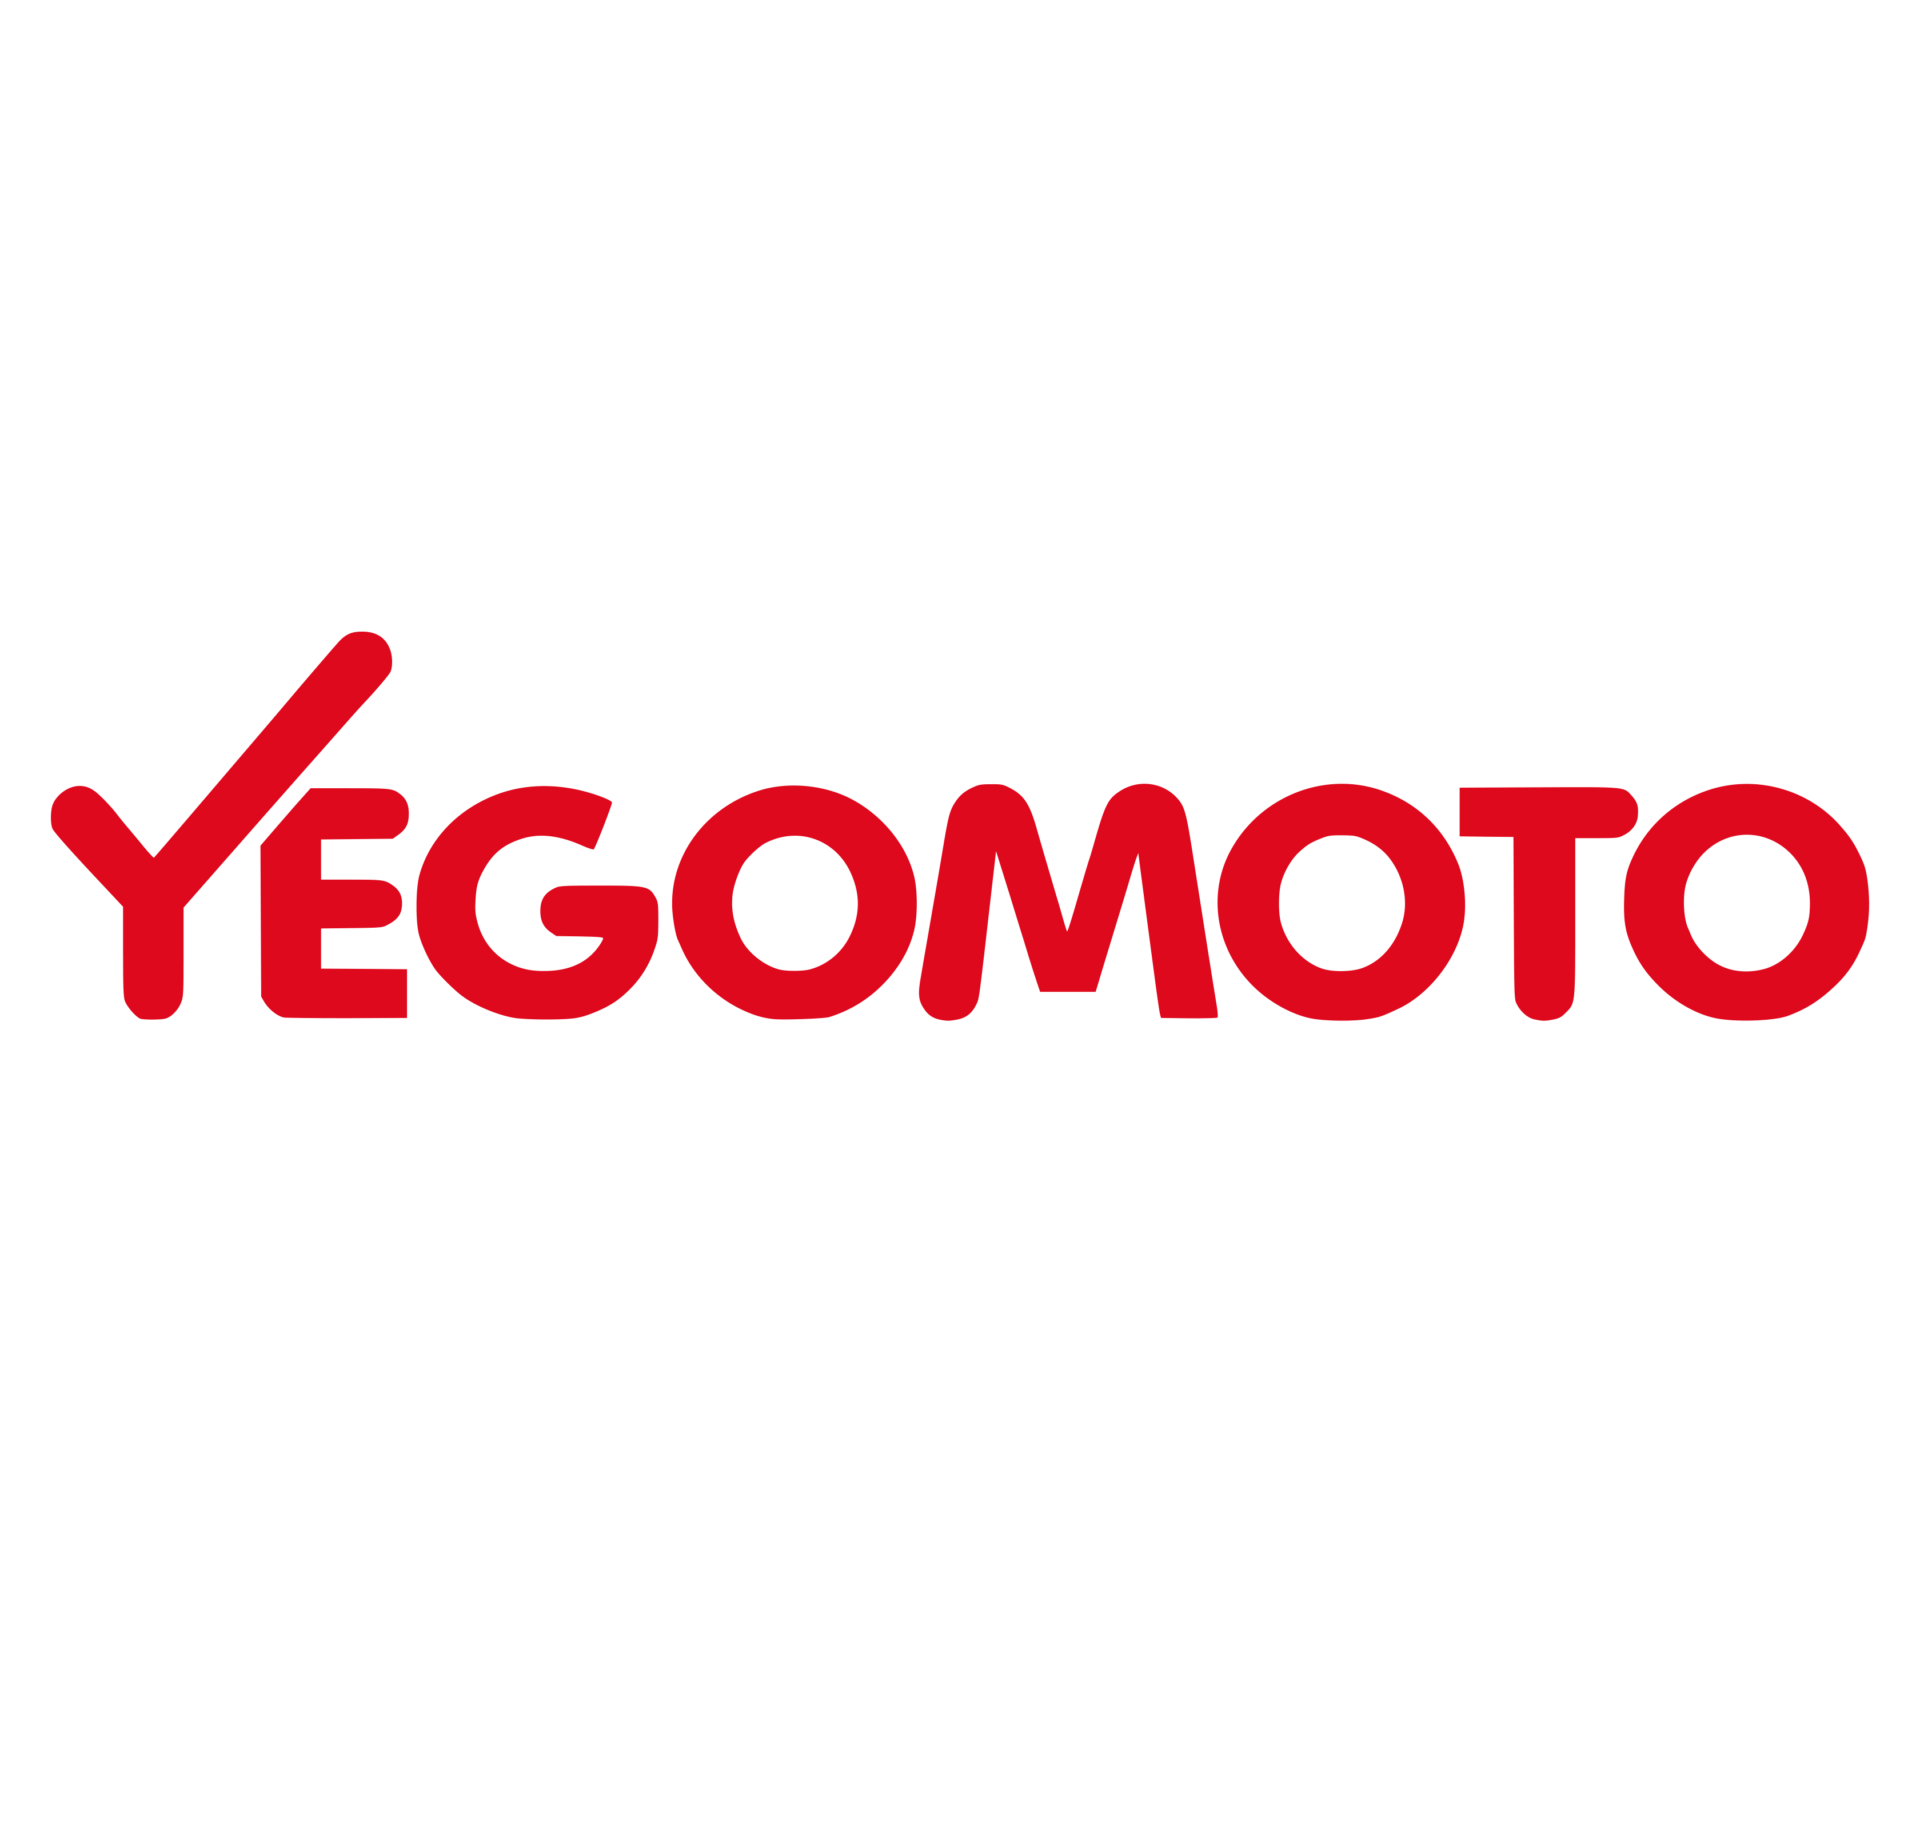 yegomoto logo